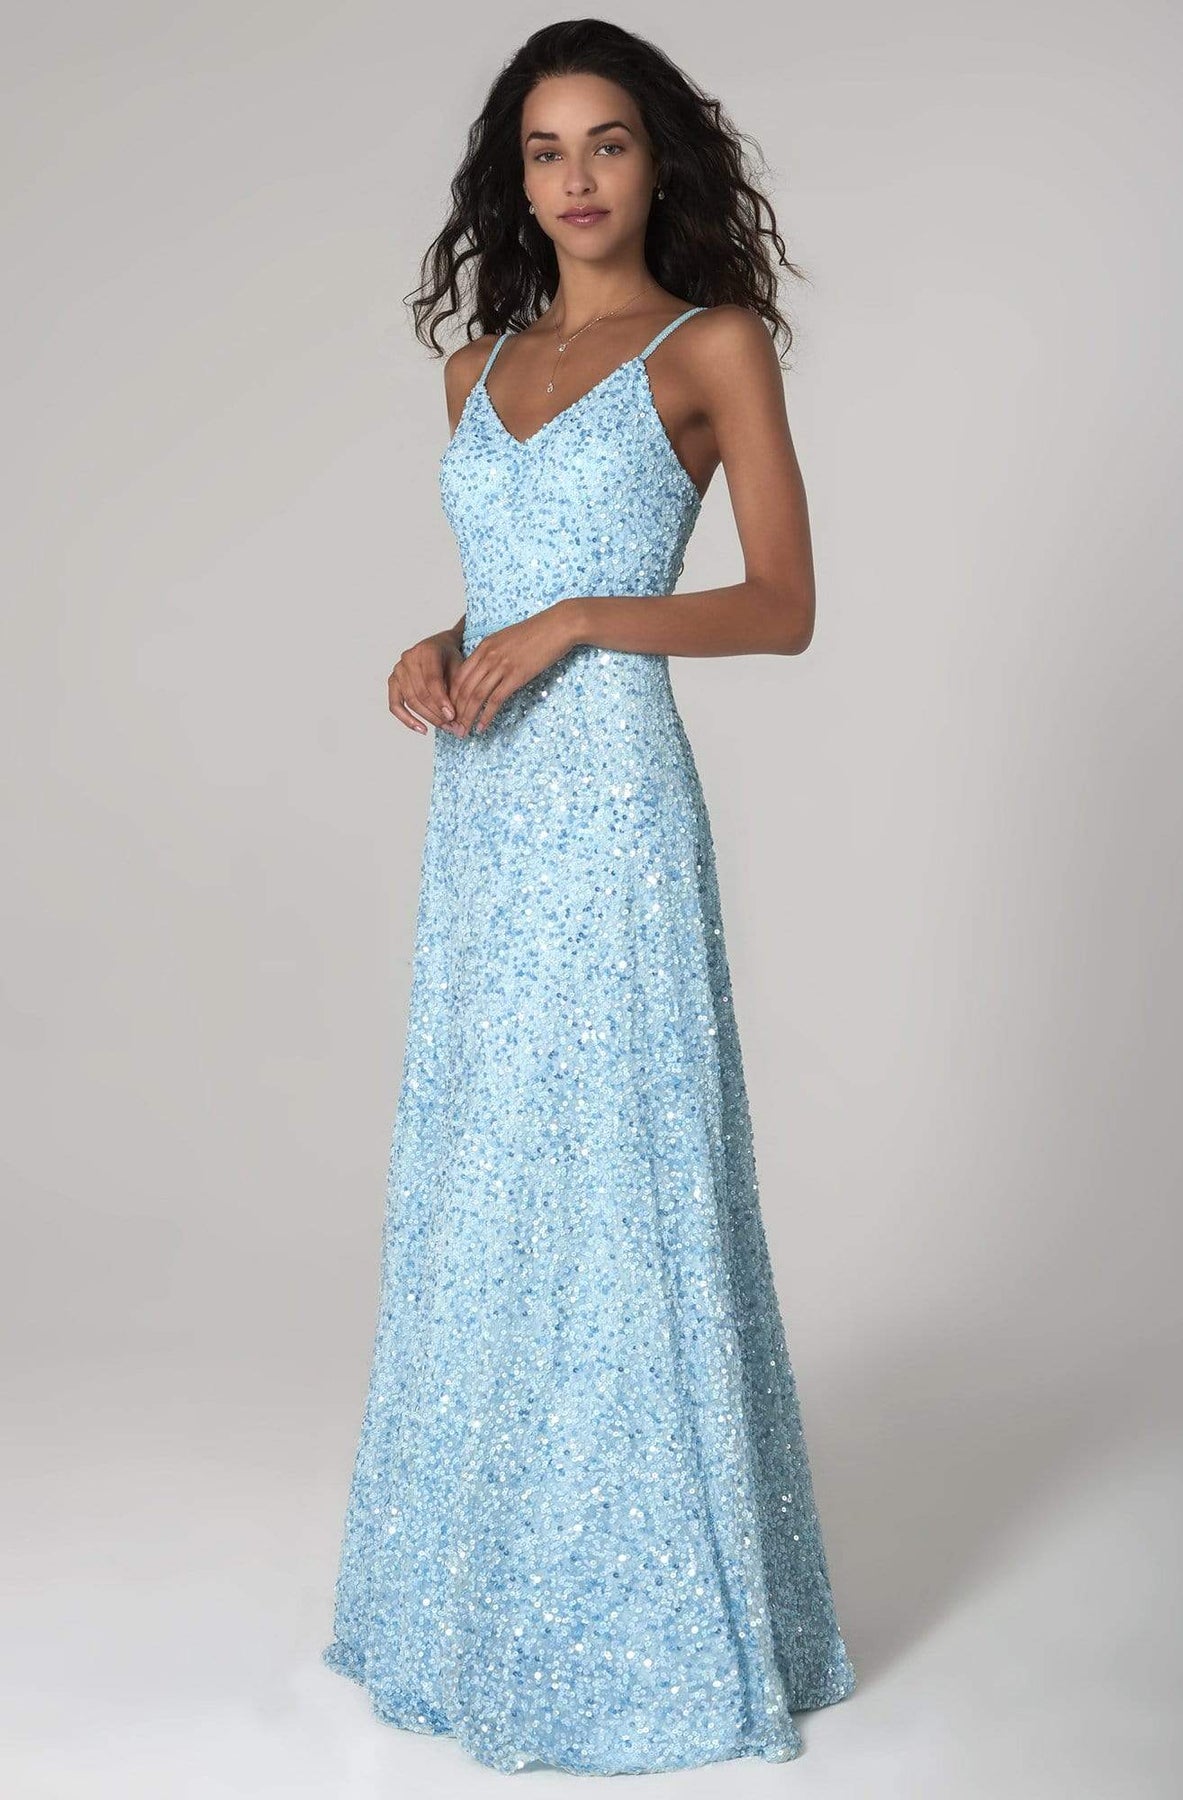 SCALA - 60109 Embellished V-neck A-line Dress Prom Dresses 00 / SKY BLUE